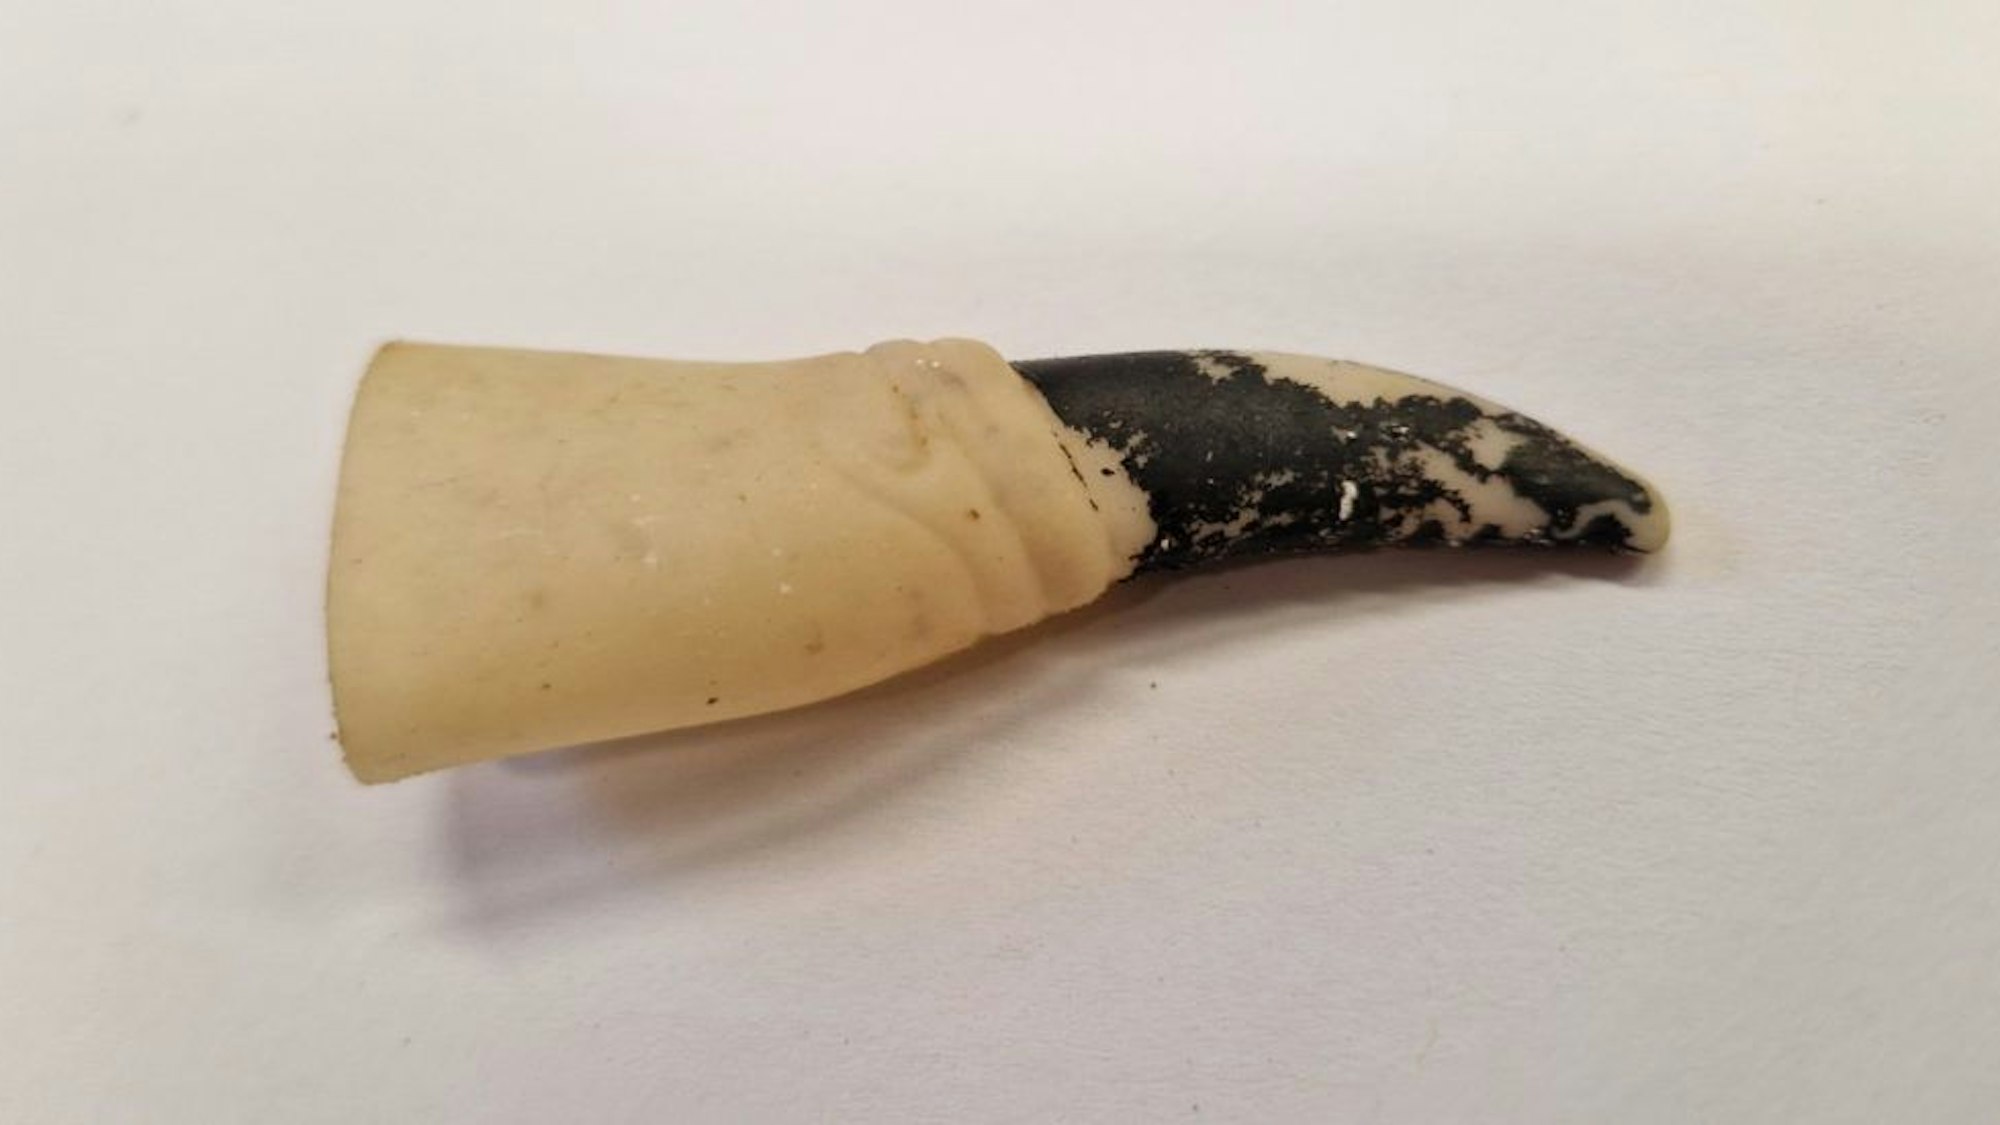 Der Finger eines Halloween-Kostüms wurde im Bauch einer toten Schildkröte gefunden.